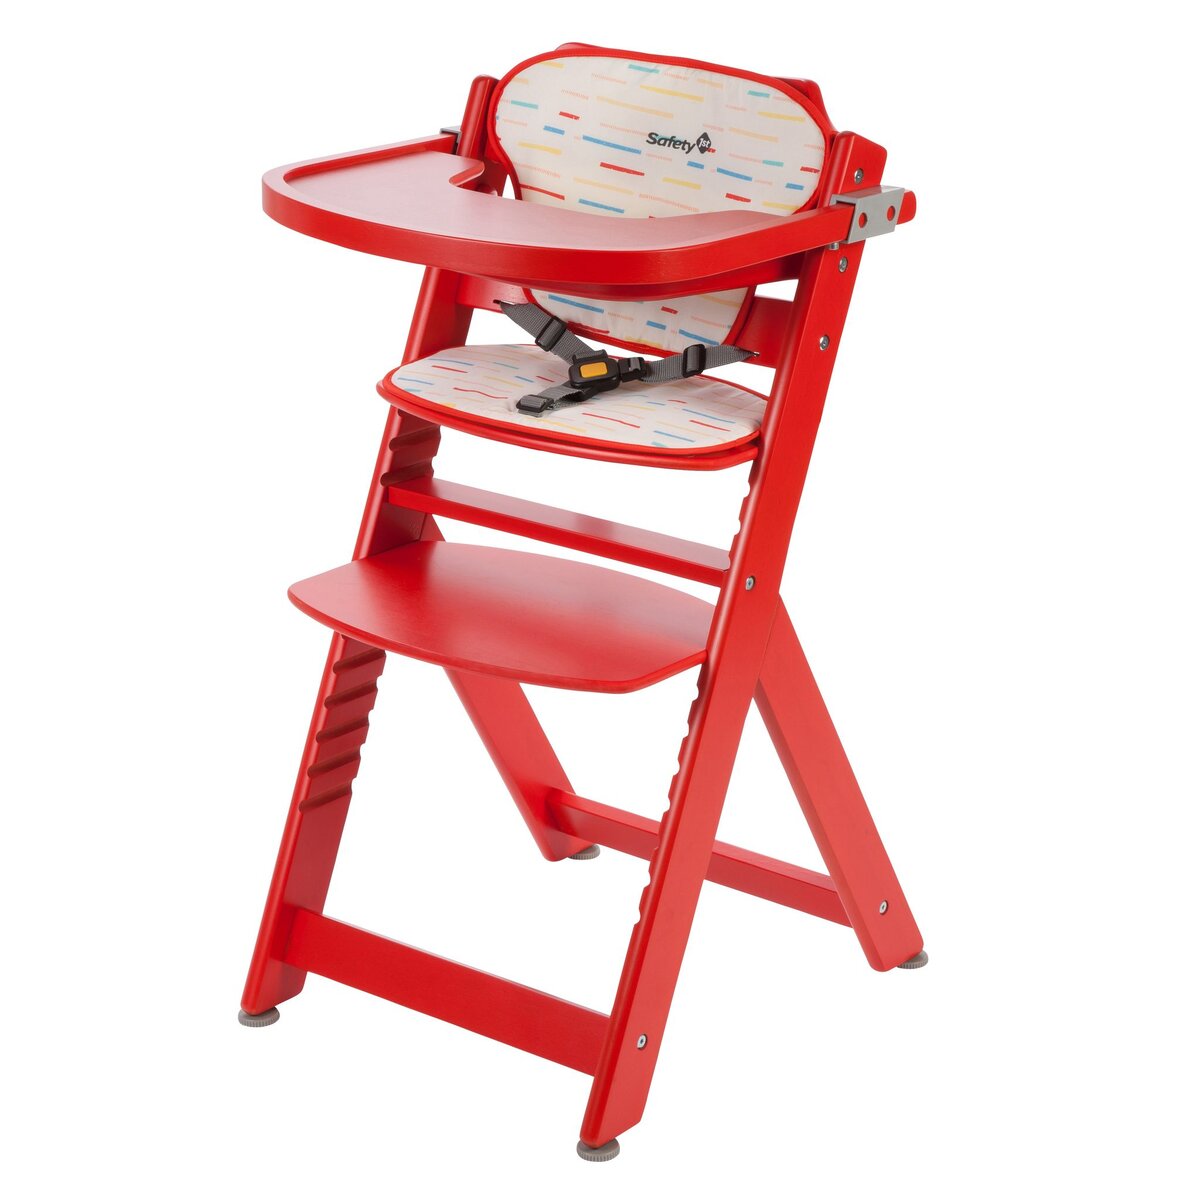 SAFETY FIRST Chaise haute bébé évolutive en bois rouge Timba 